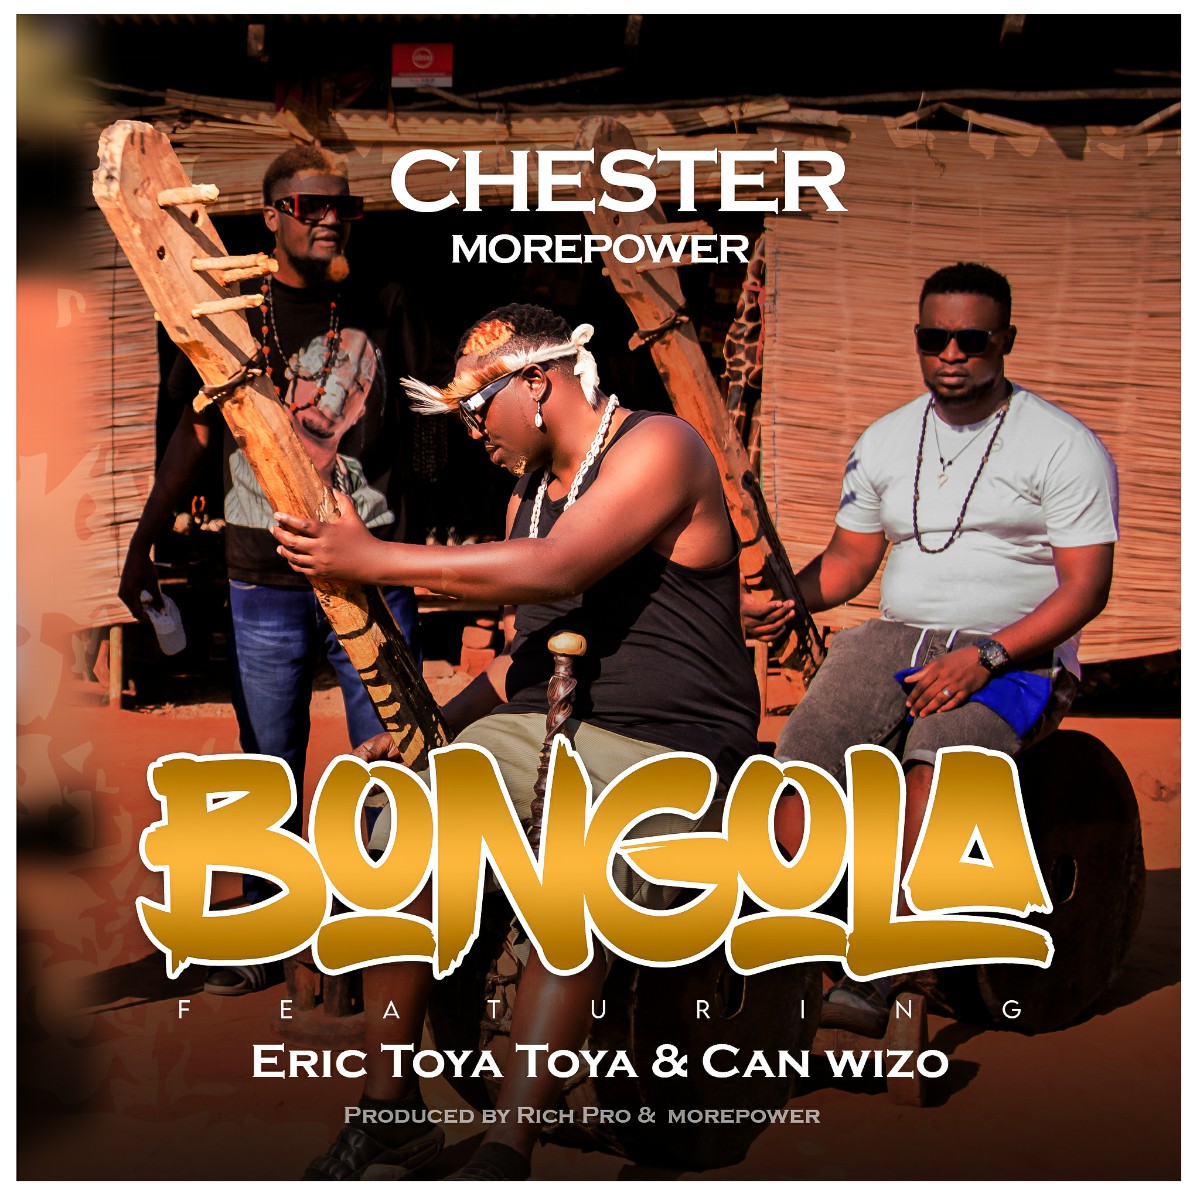 Bongola (Ft Eric Toya Toya & Can Wizo)